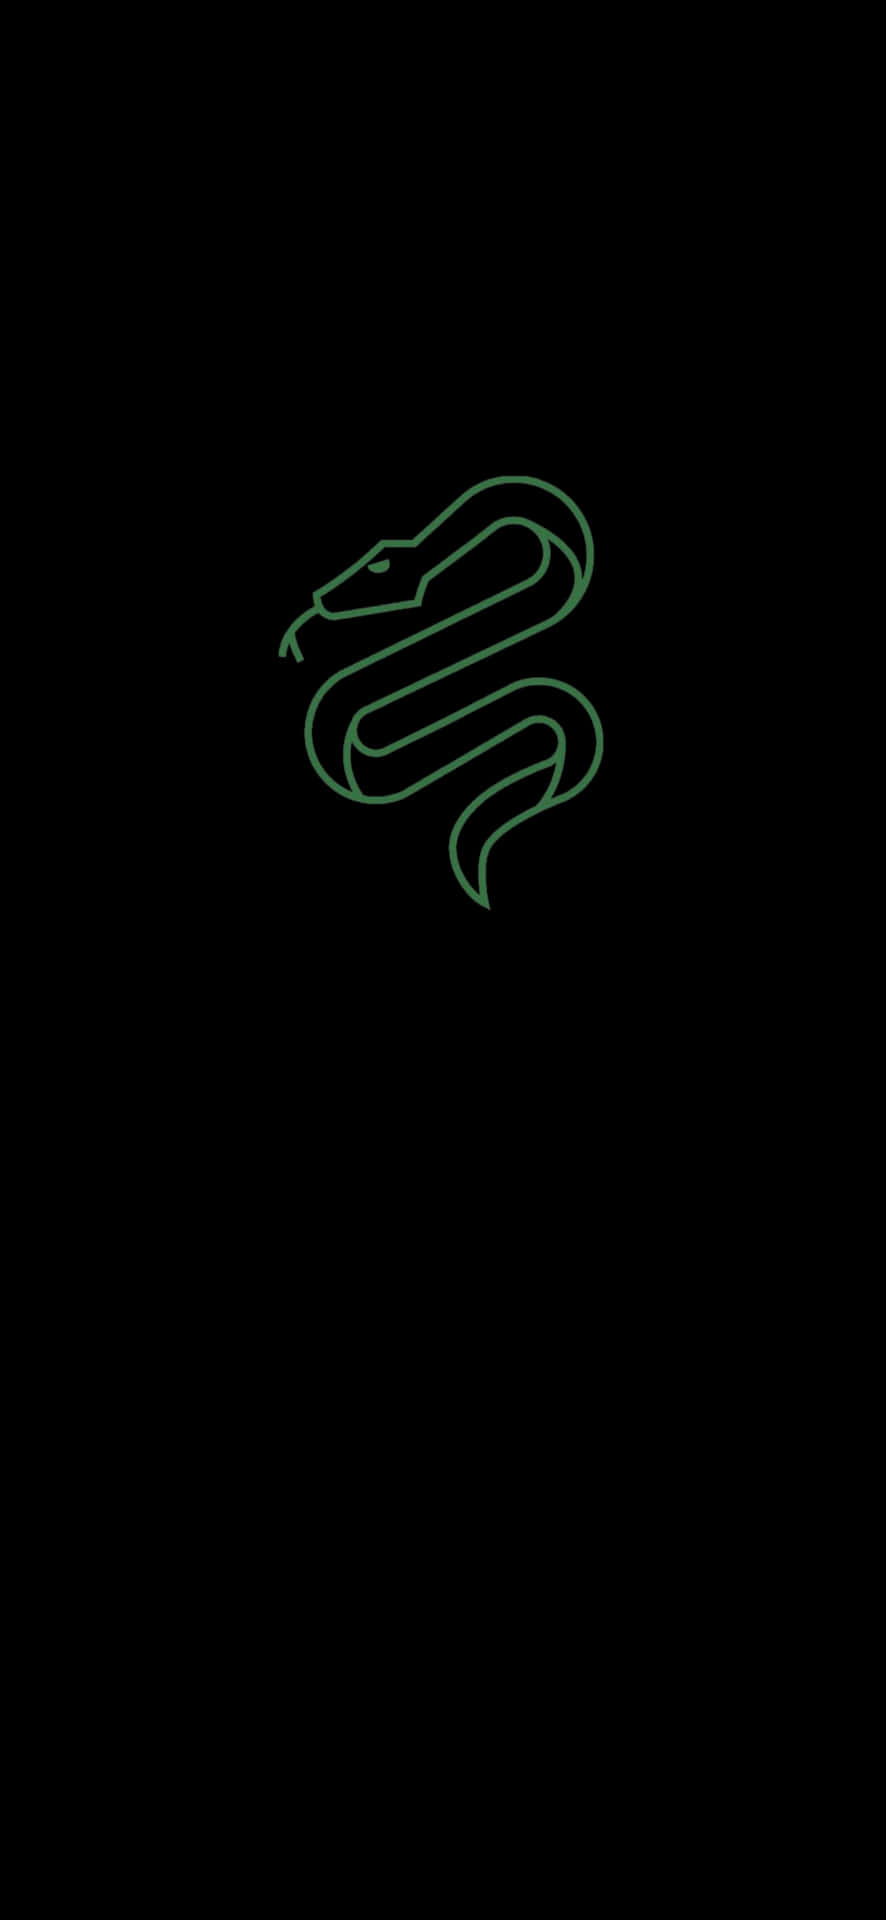 Eingrünes Schlangenlogo Auf Schwarzem Hintergrund Wallpaper